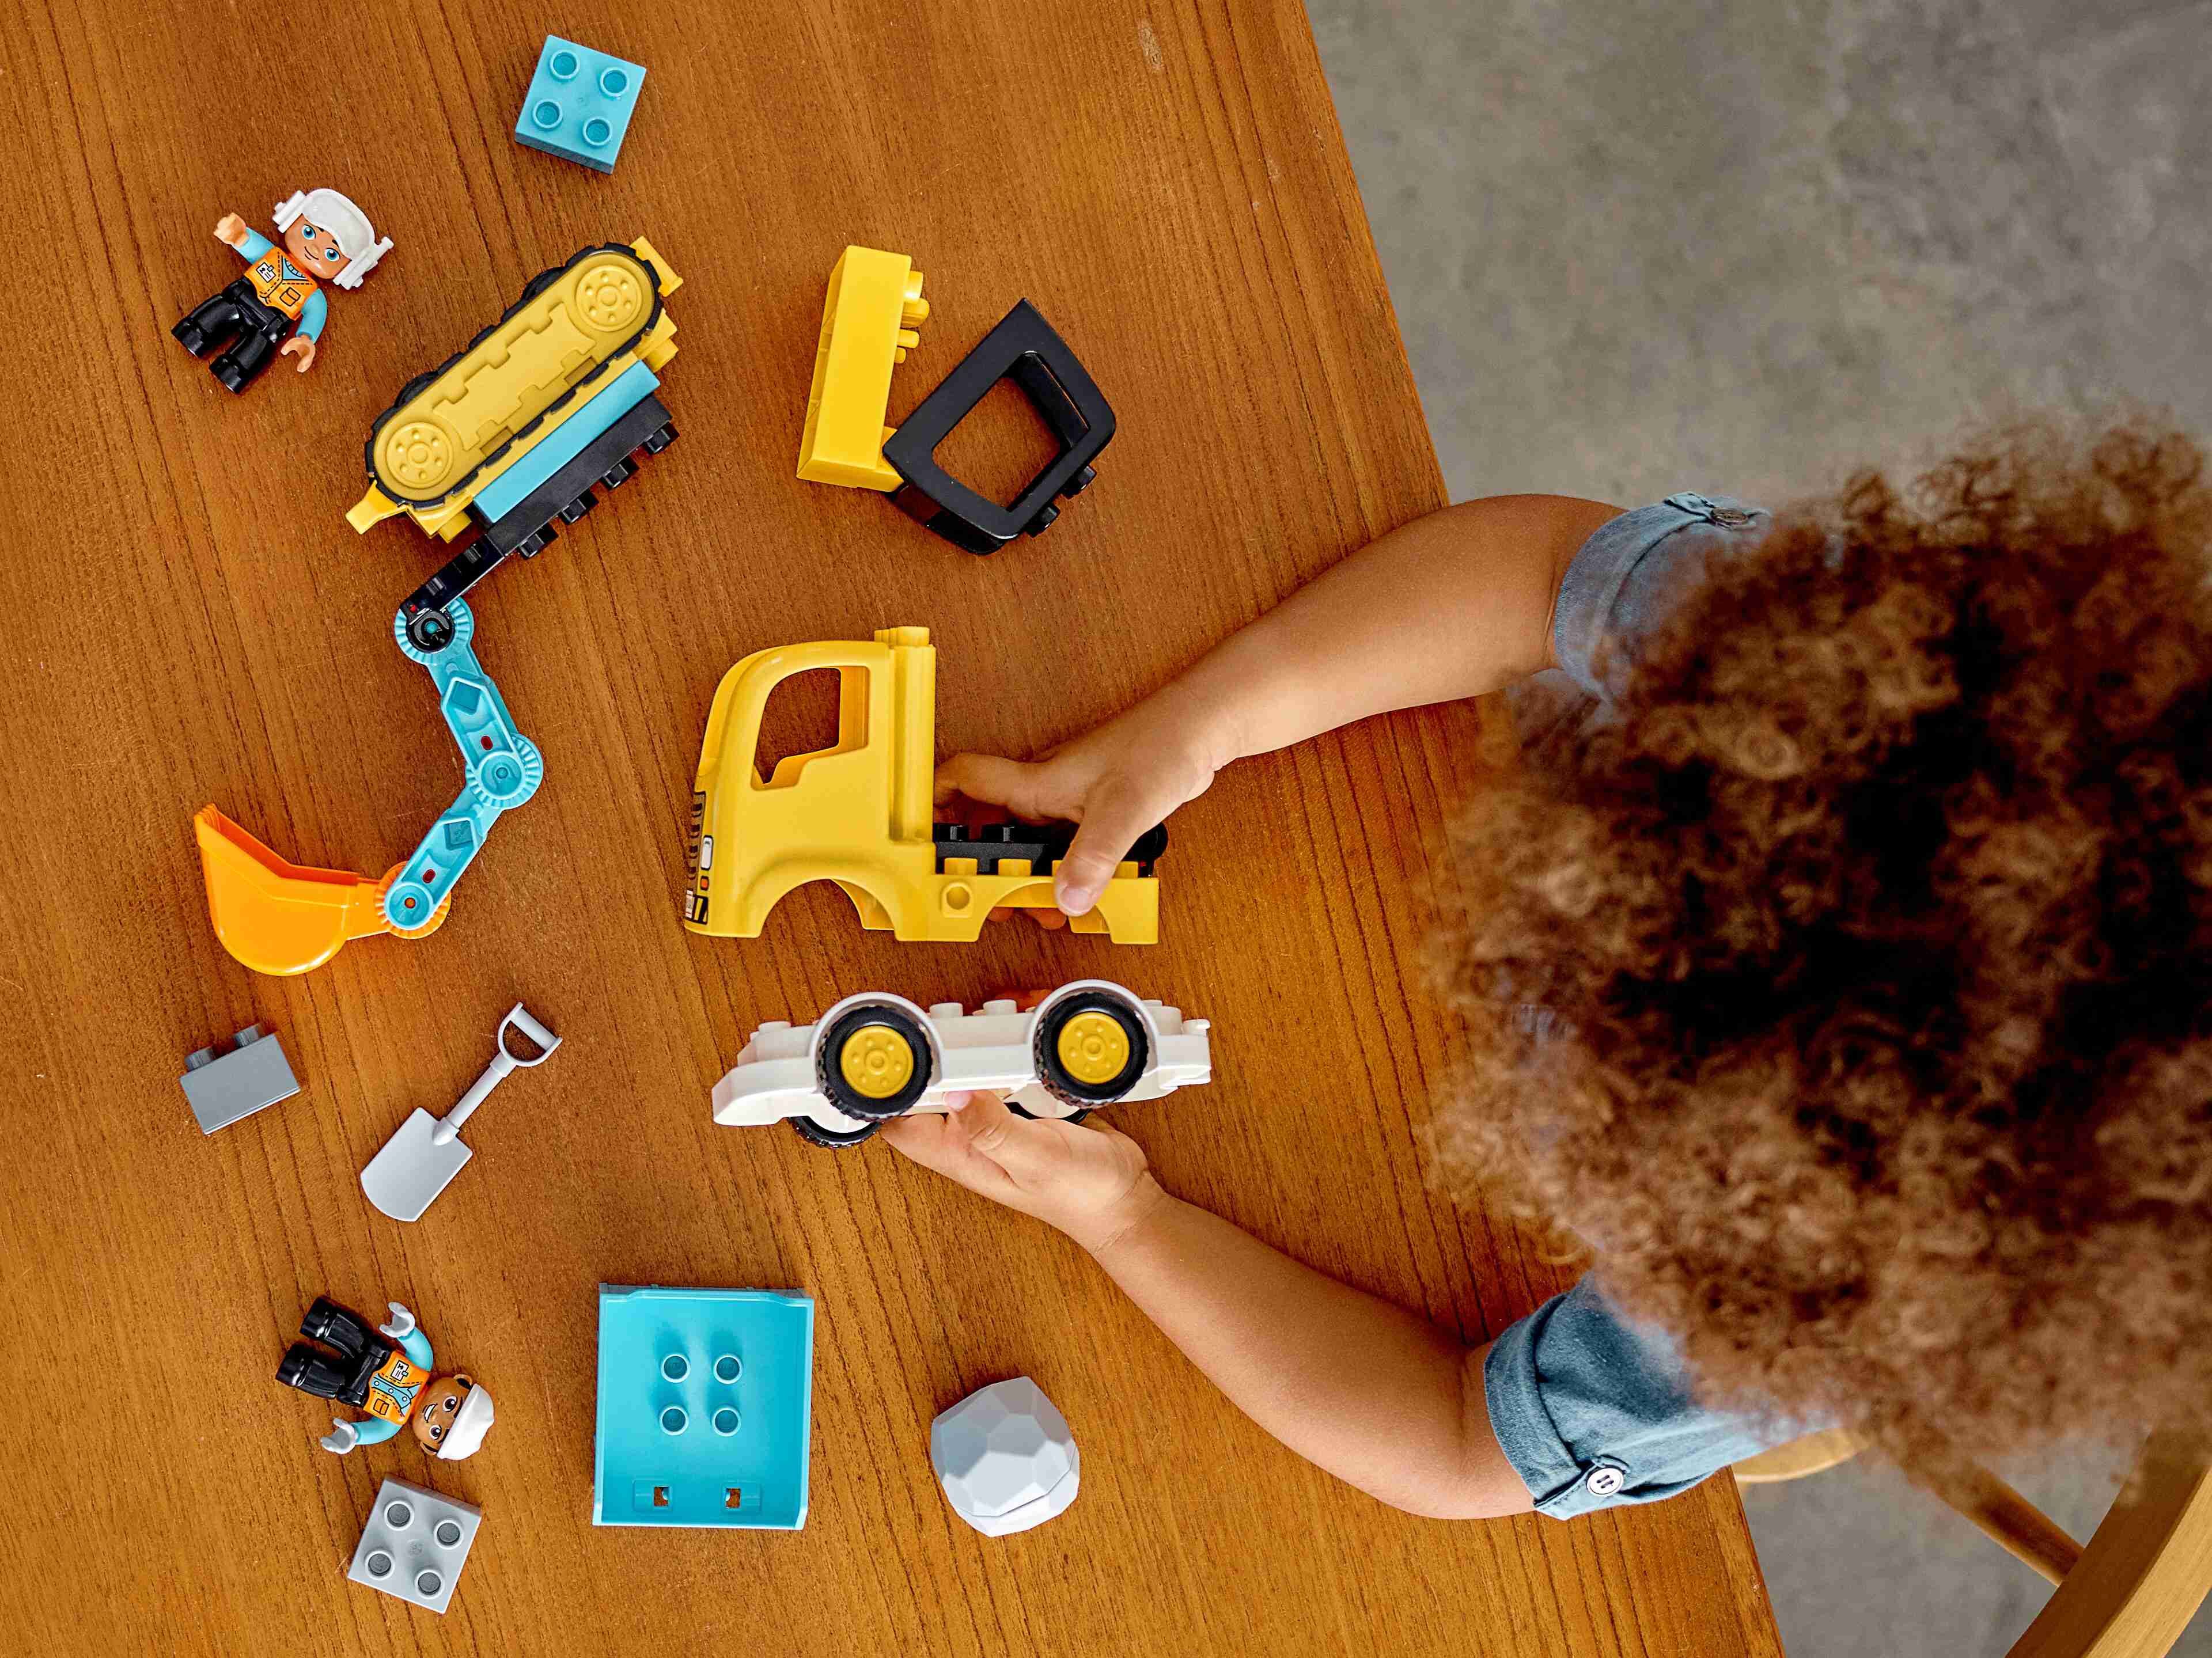 LEGO 10931 DUPLO Bagger und Laster Baufahrzeug Spielzeugset für Kleinkinder ab 2